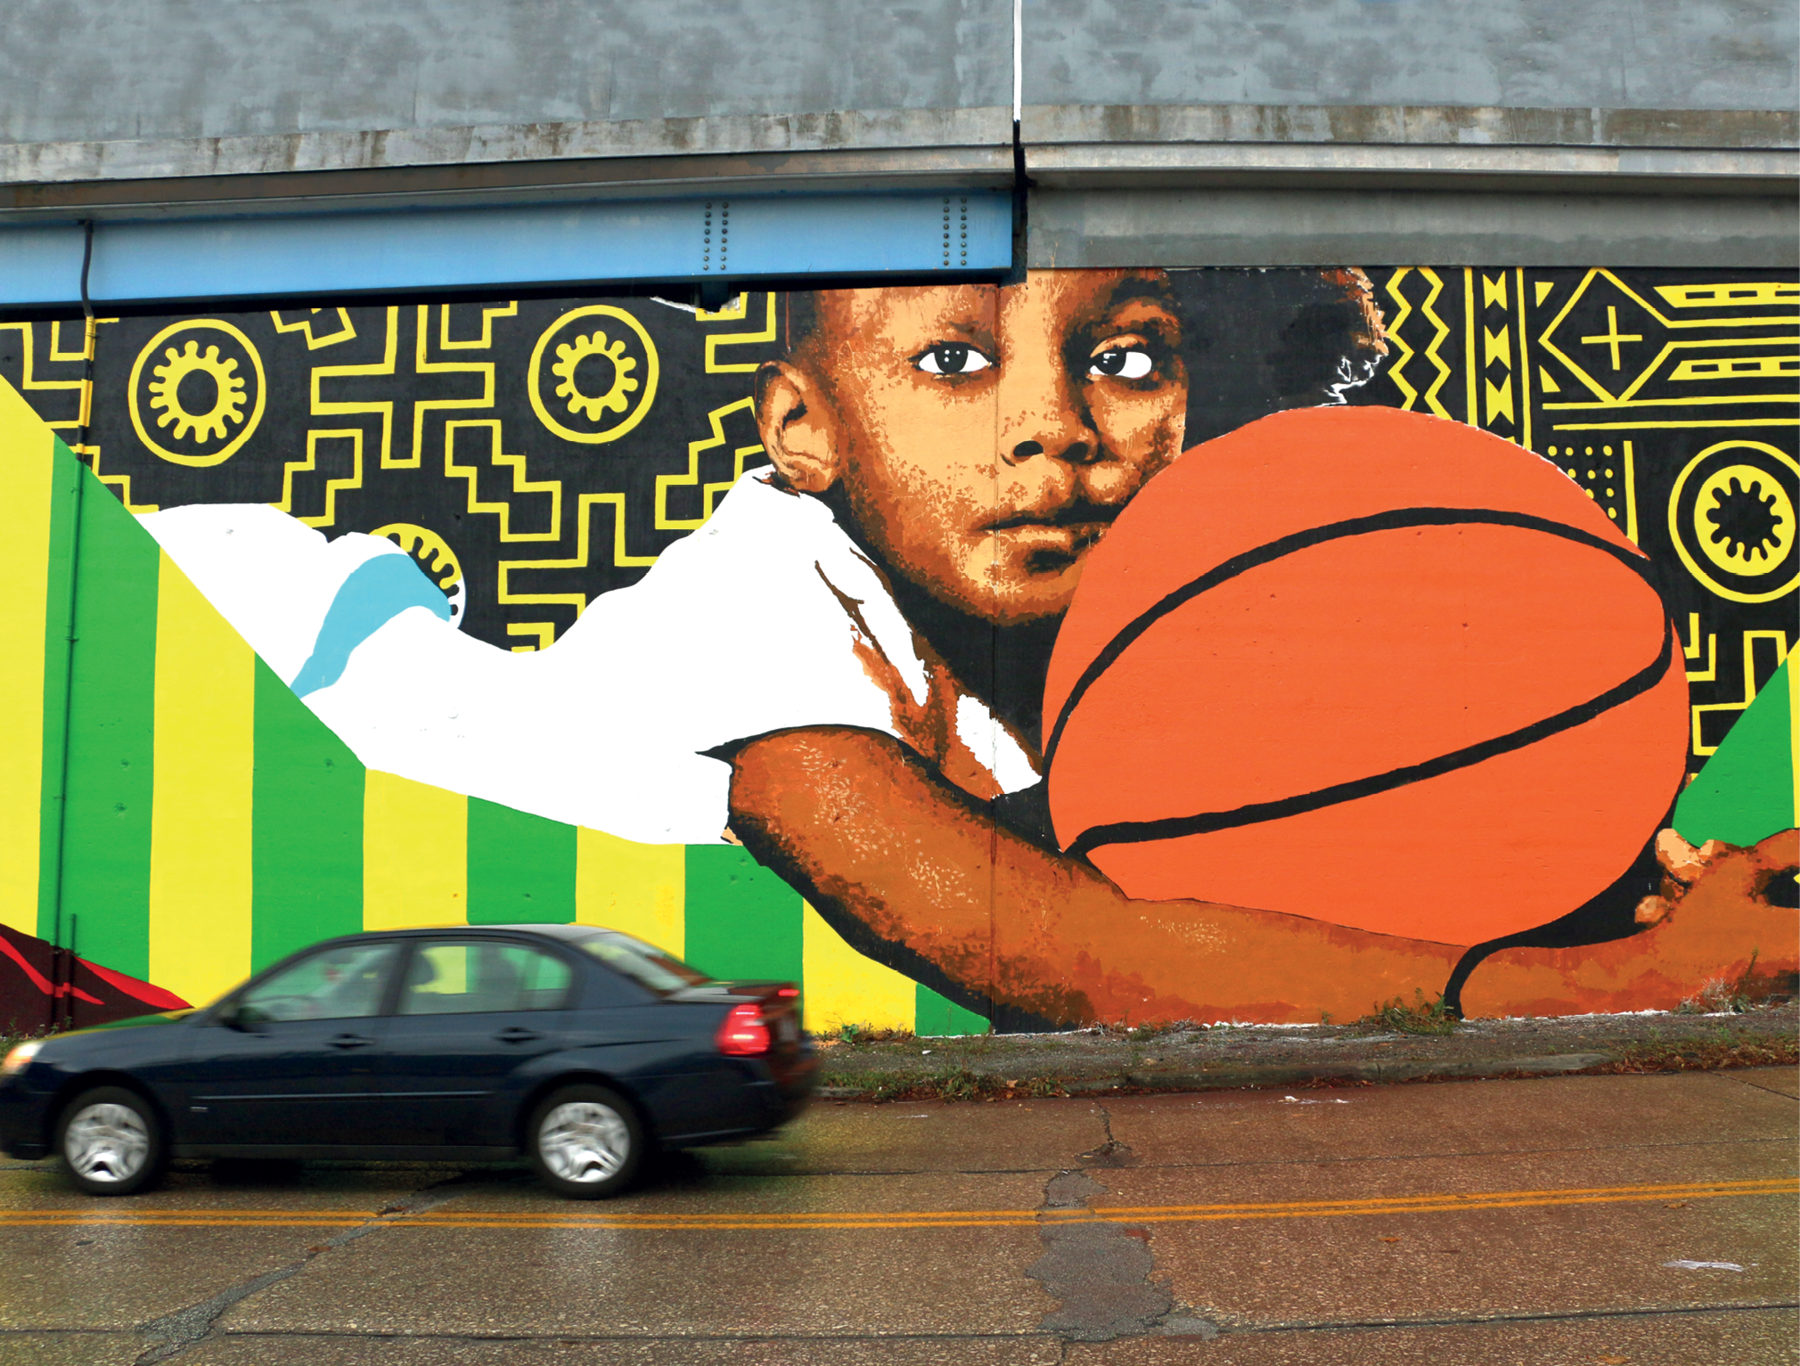 Fotografia. Detalhe de pintura mural, mostrando um menino de cabelo curto preto. Ele veste camiseta branca e está deitado de barriga para baixo, segurando uma bola de basquete. Ao redor do menino há desenhos simétricos em preto e amarelo e listras verdes e amarelas.